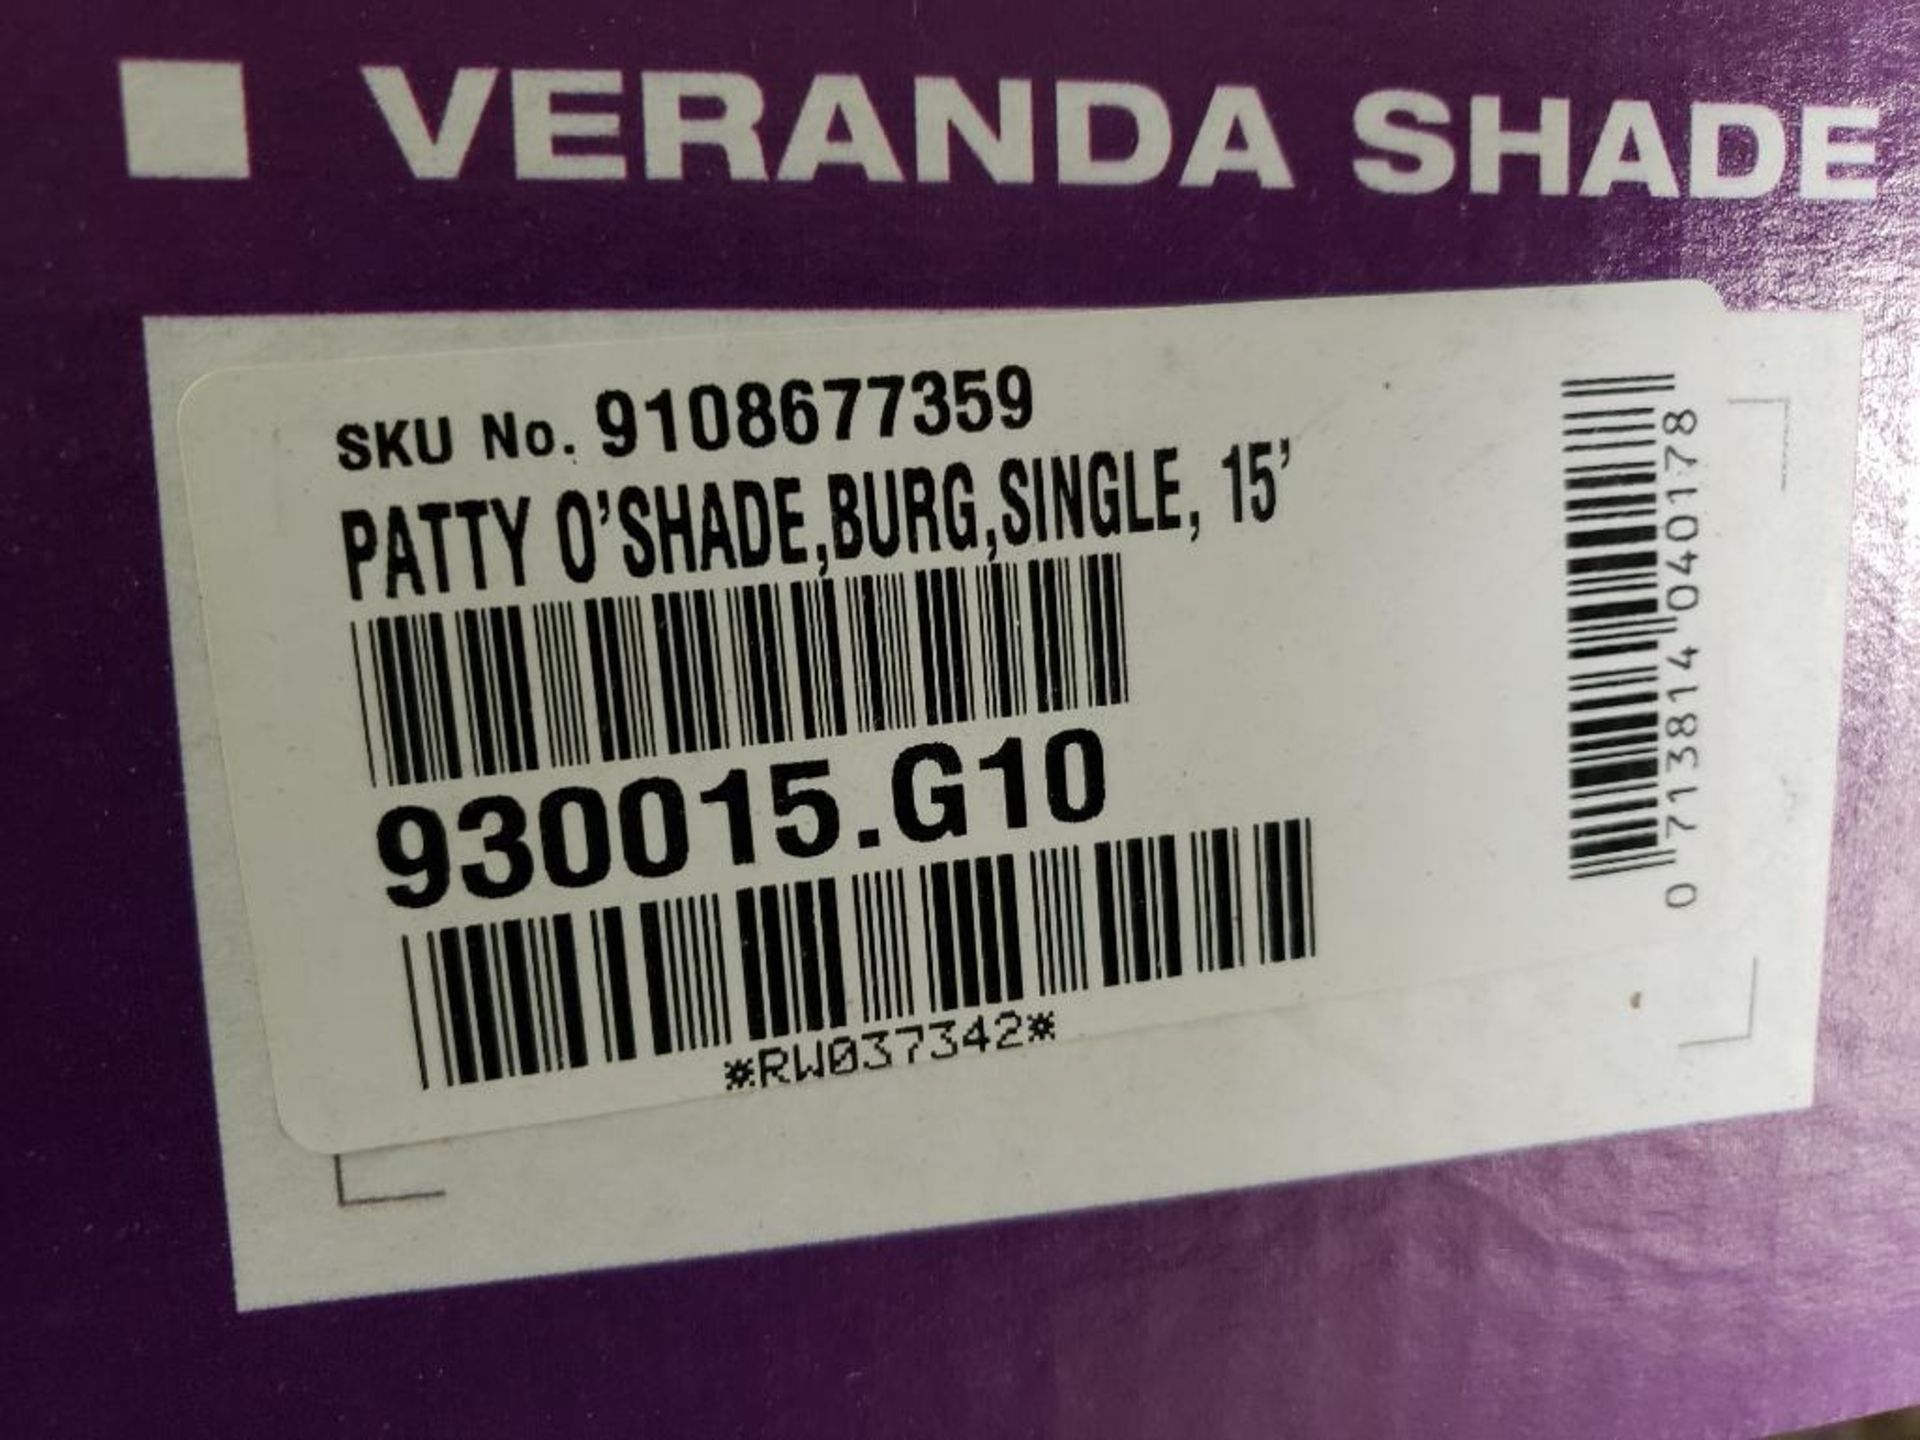 Qty 40 - RV awning veranda shade. Patty O-Shade 15'. Part number 930015.G10. - Image 5 of 5